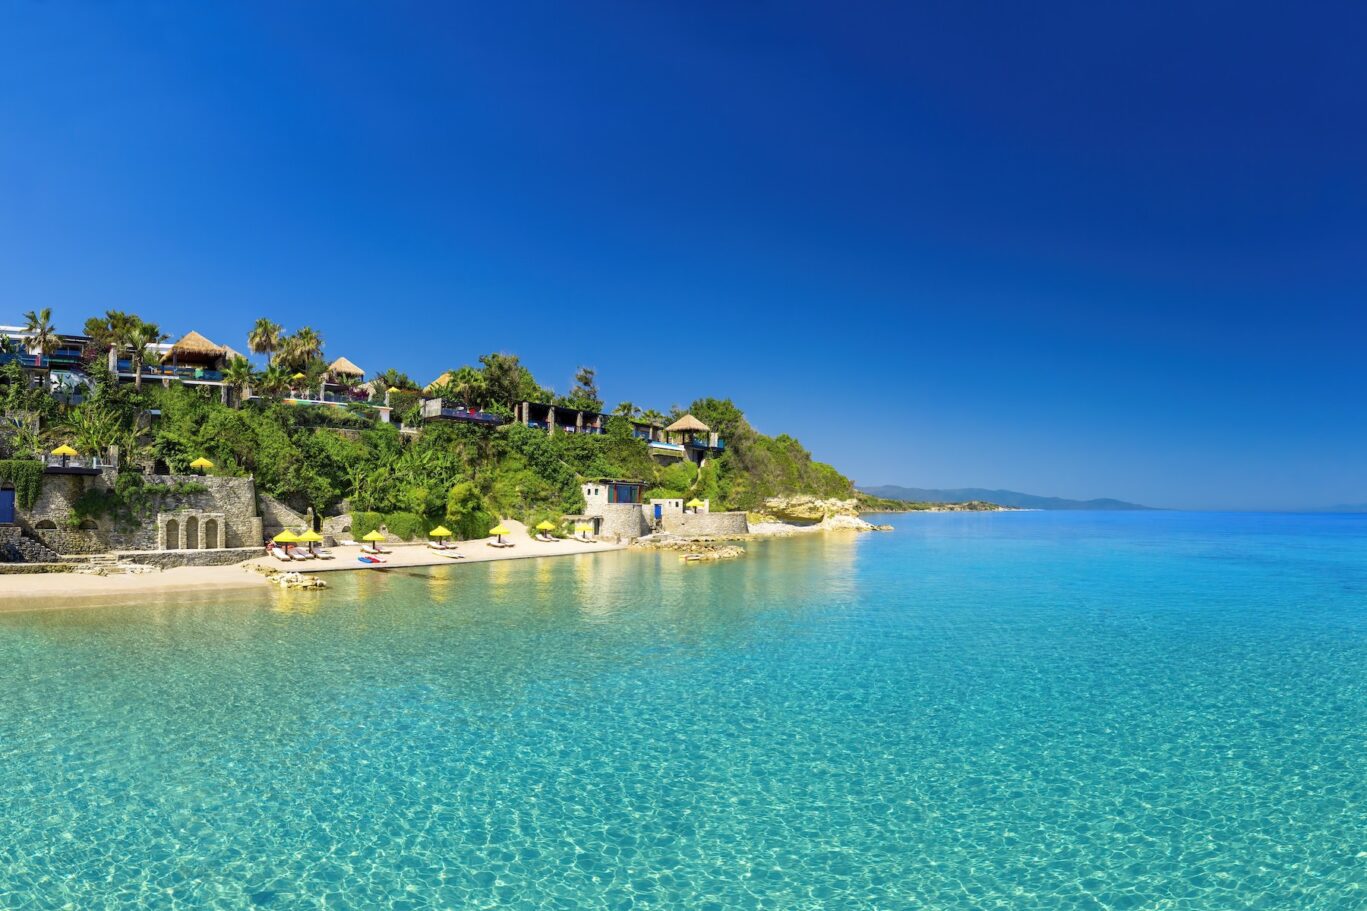 Imperial Spa Villa Greece 5-Star Exclusive Four-Bedroom Beachfront Luxury Villa Porto Zante Villas and Spa